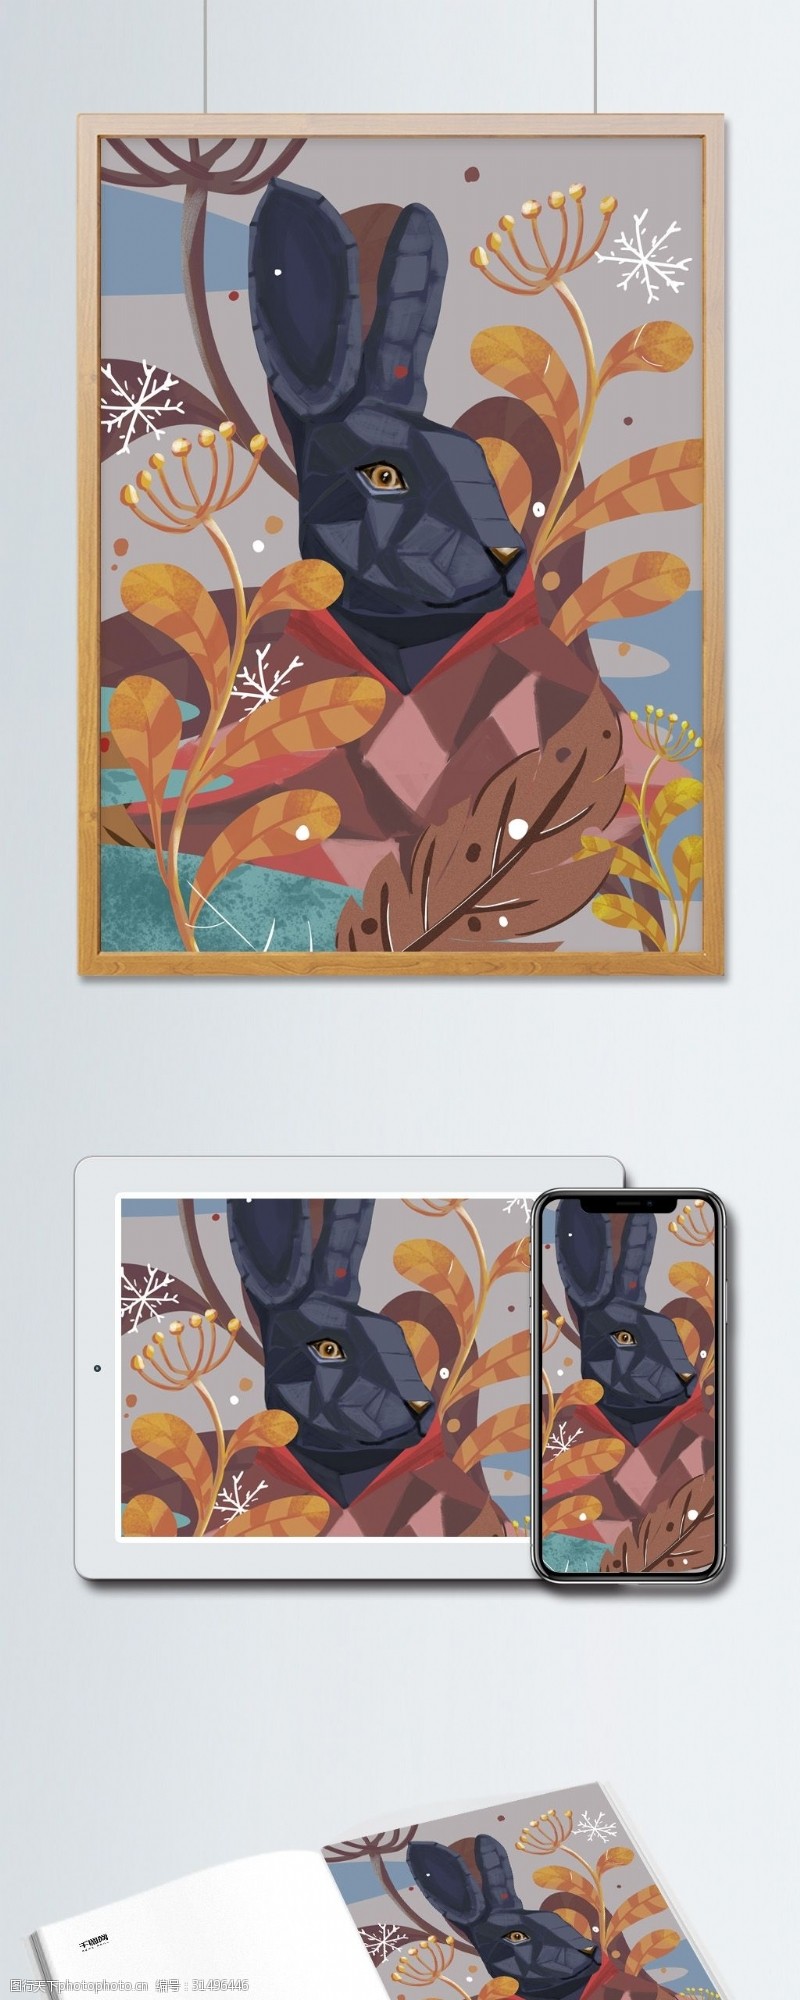 手机配图自然印记花朵与兔子先生动物拟人植物色块